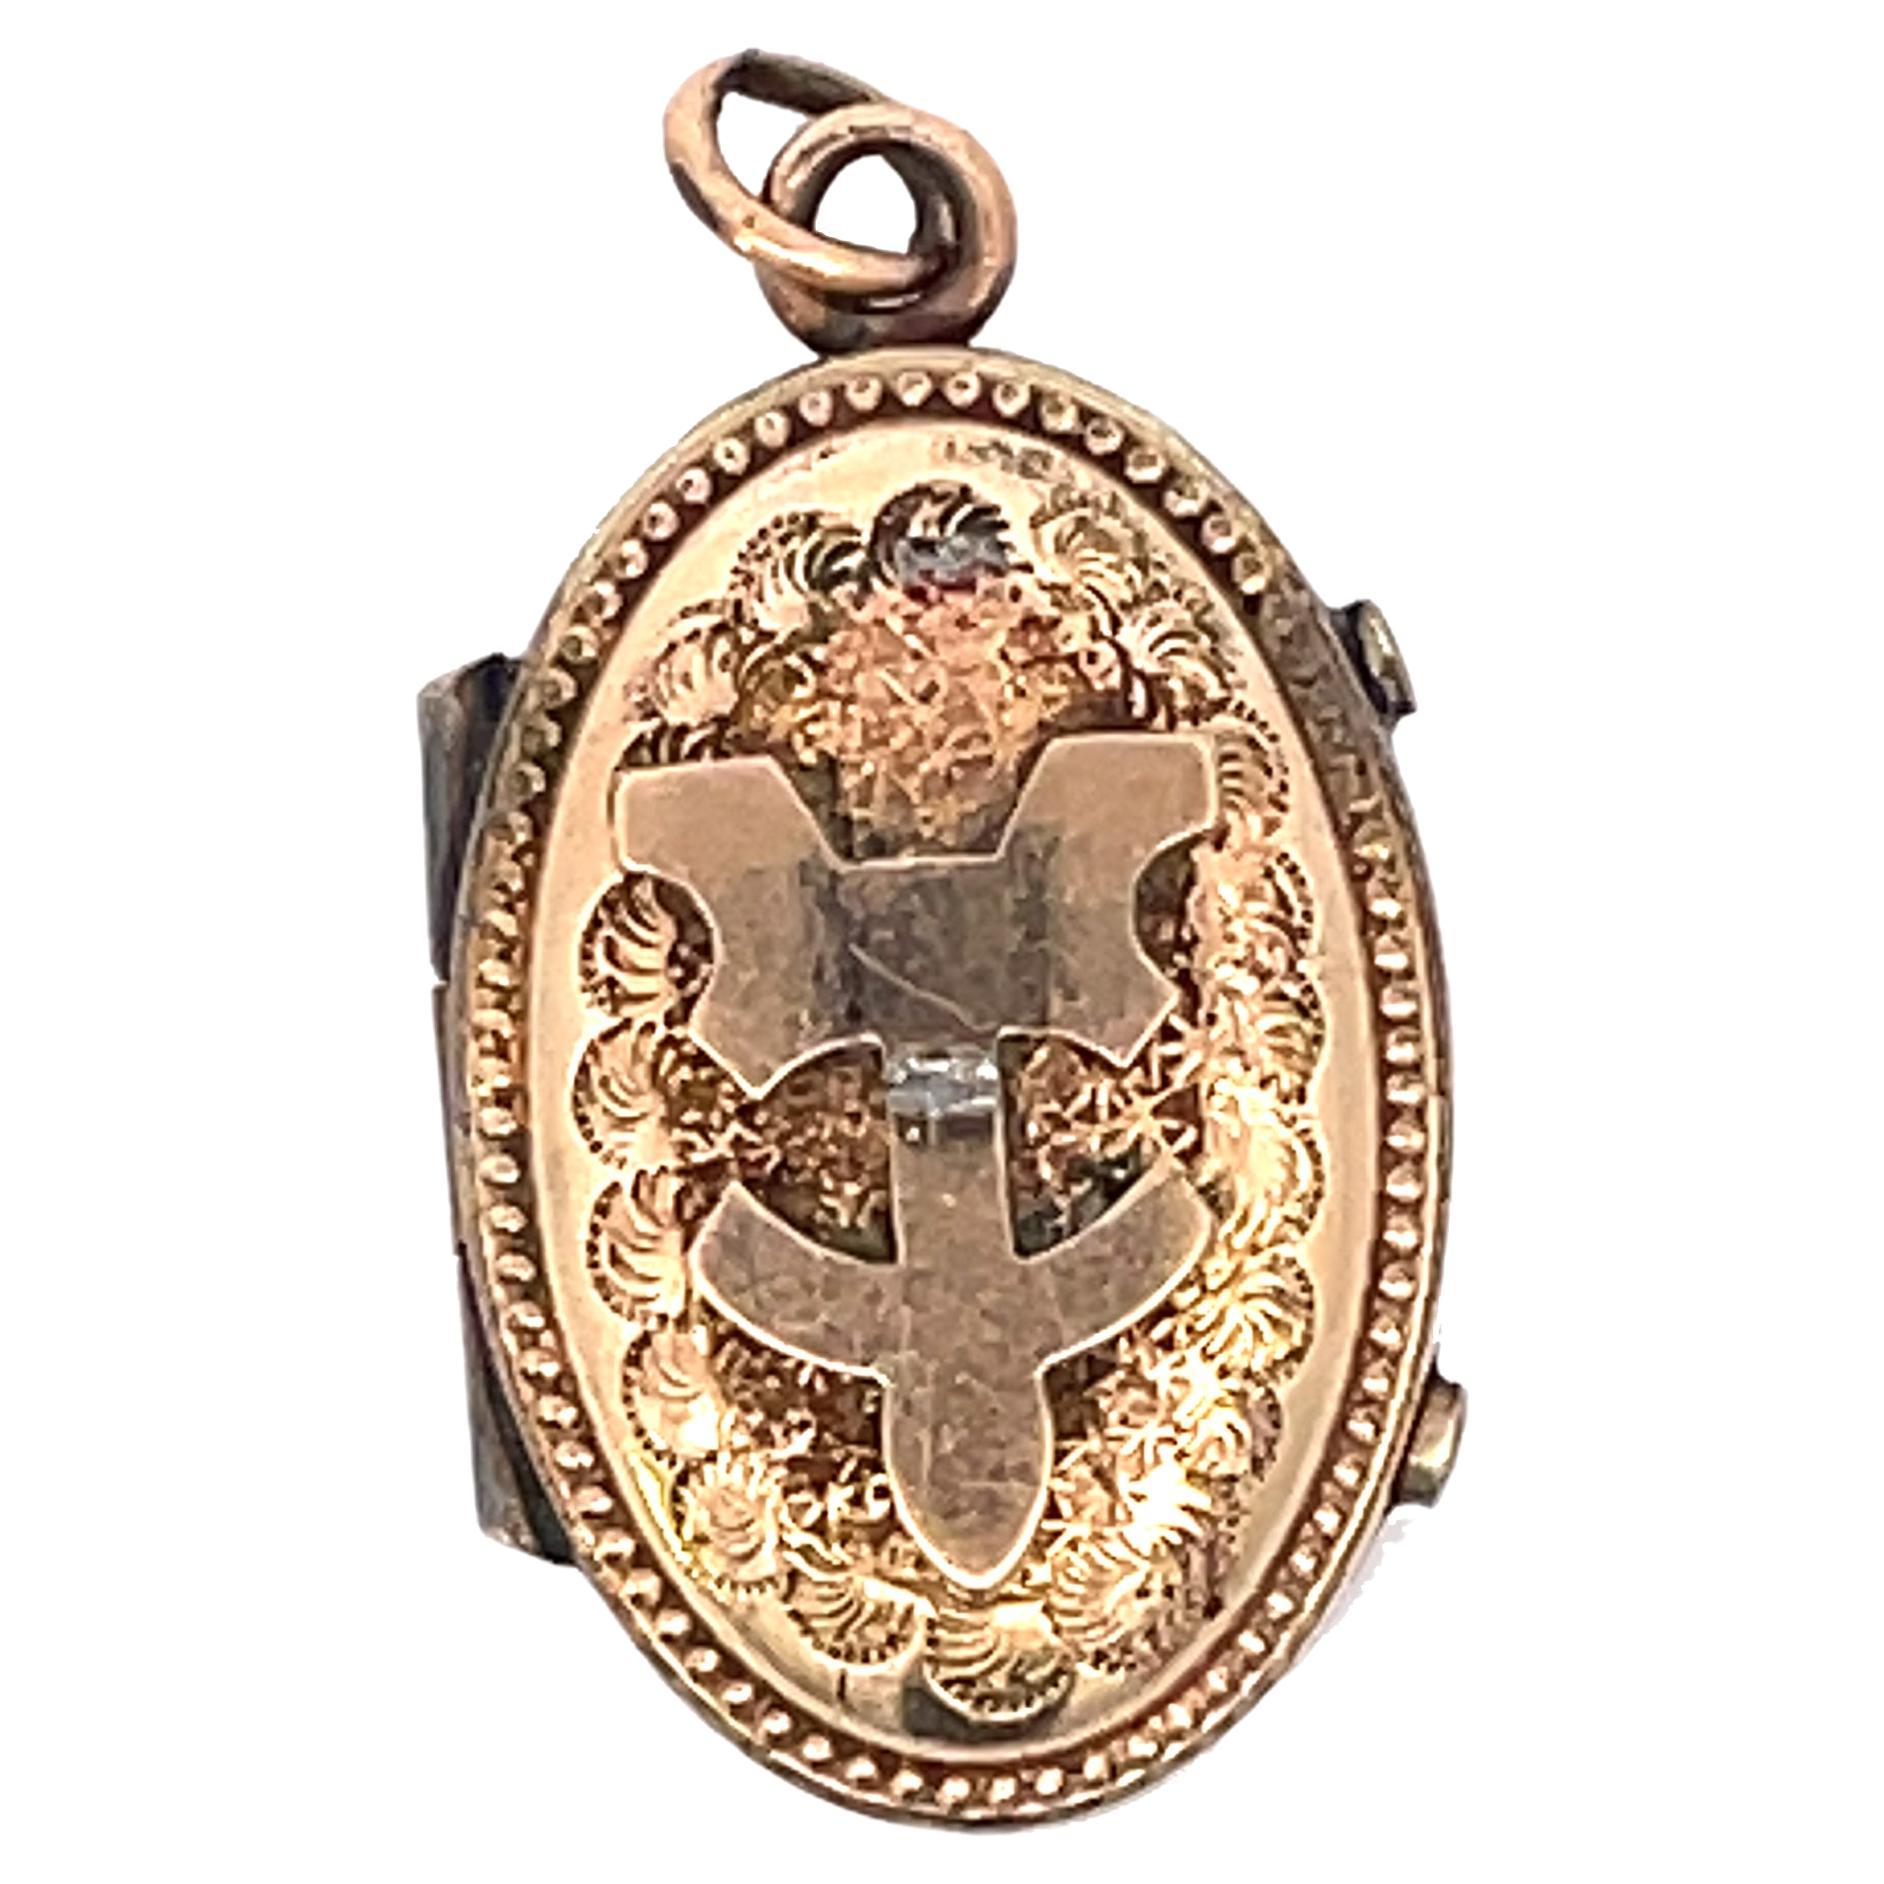 1890 Etruskisches Gold Medaillon mit Gravur